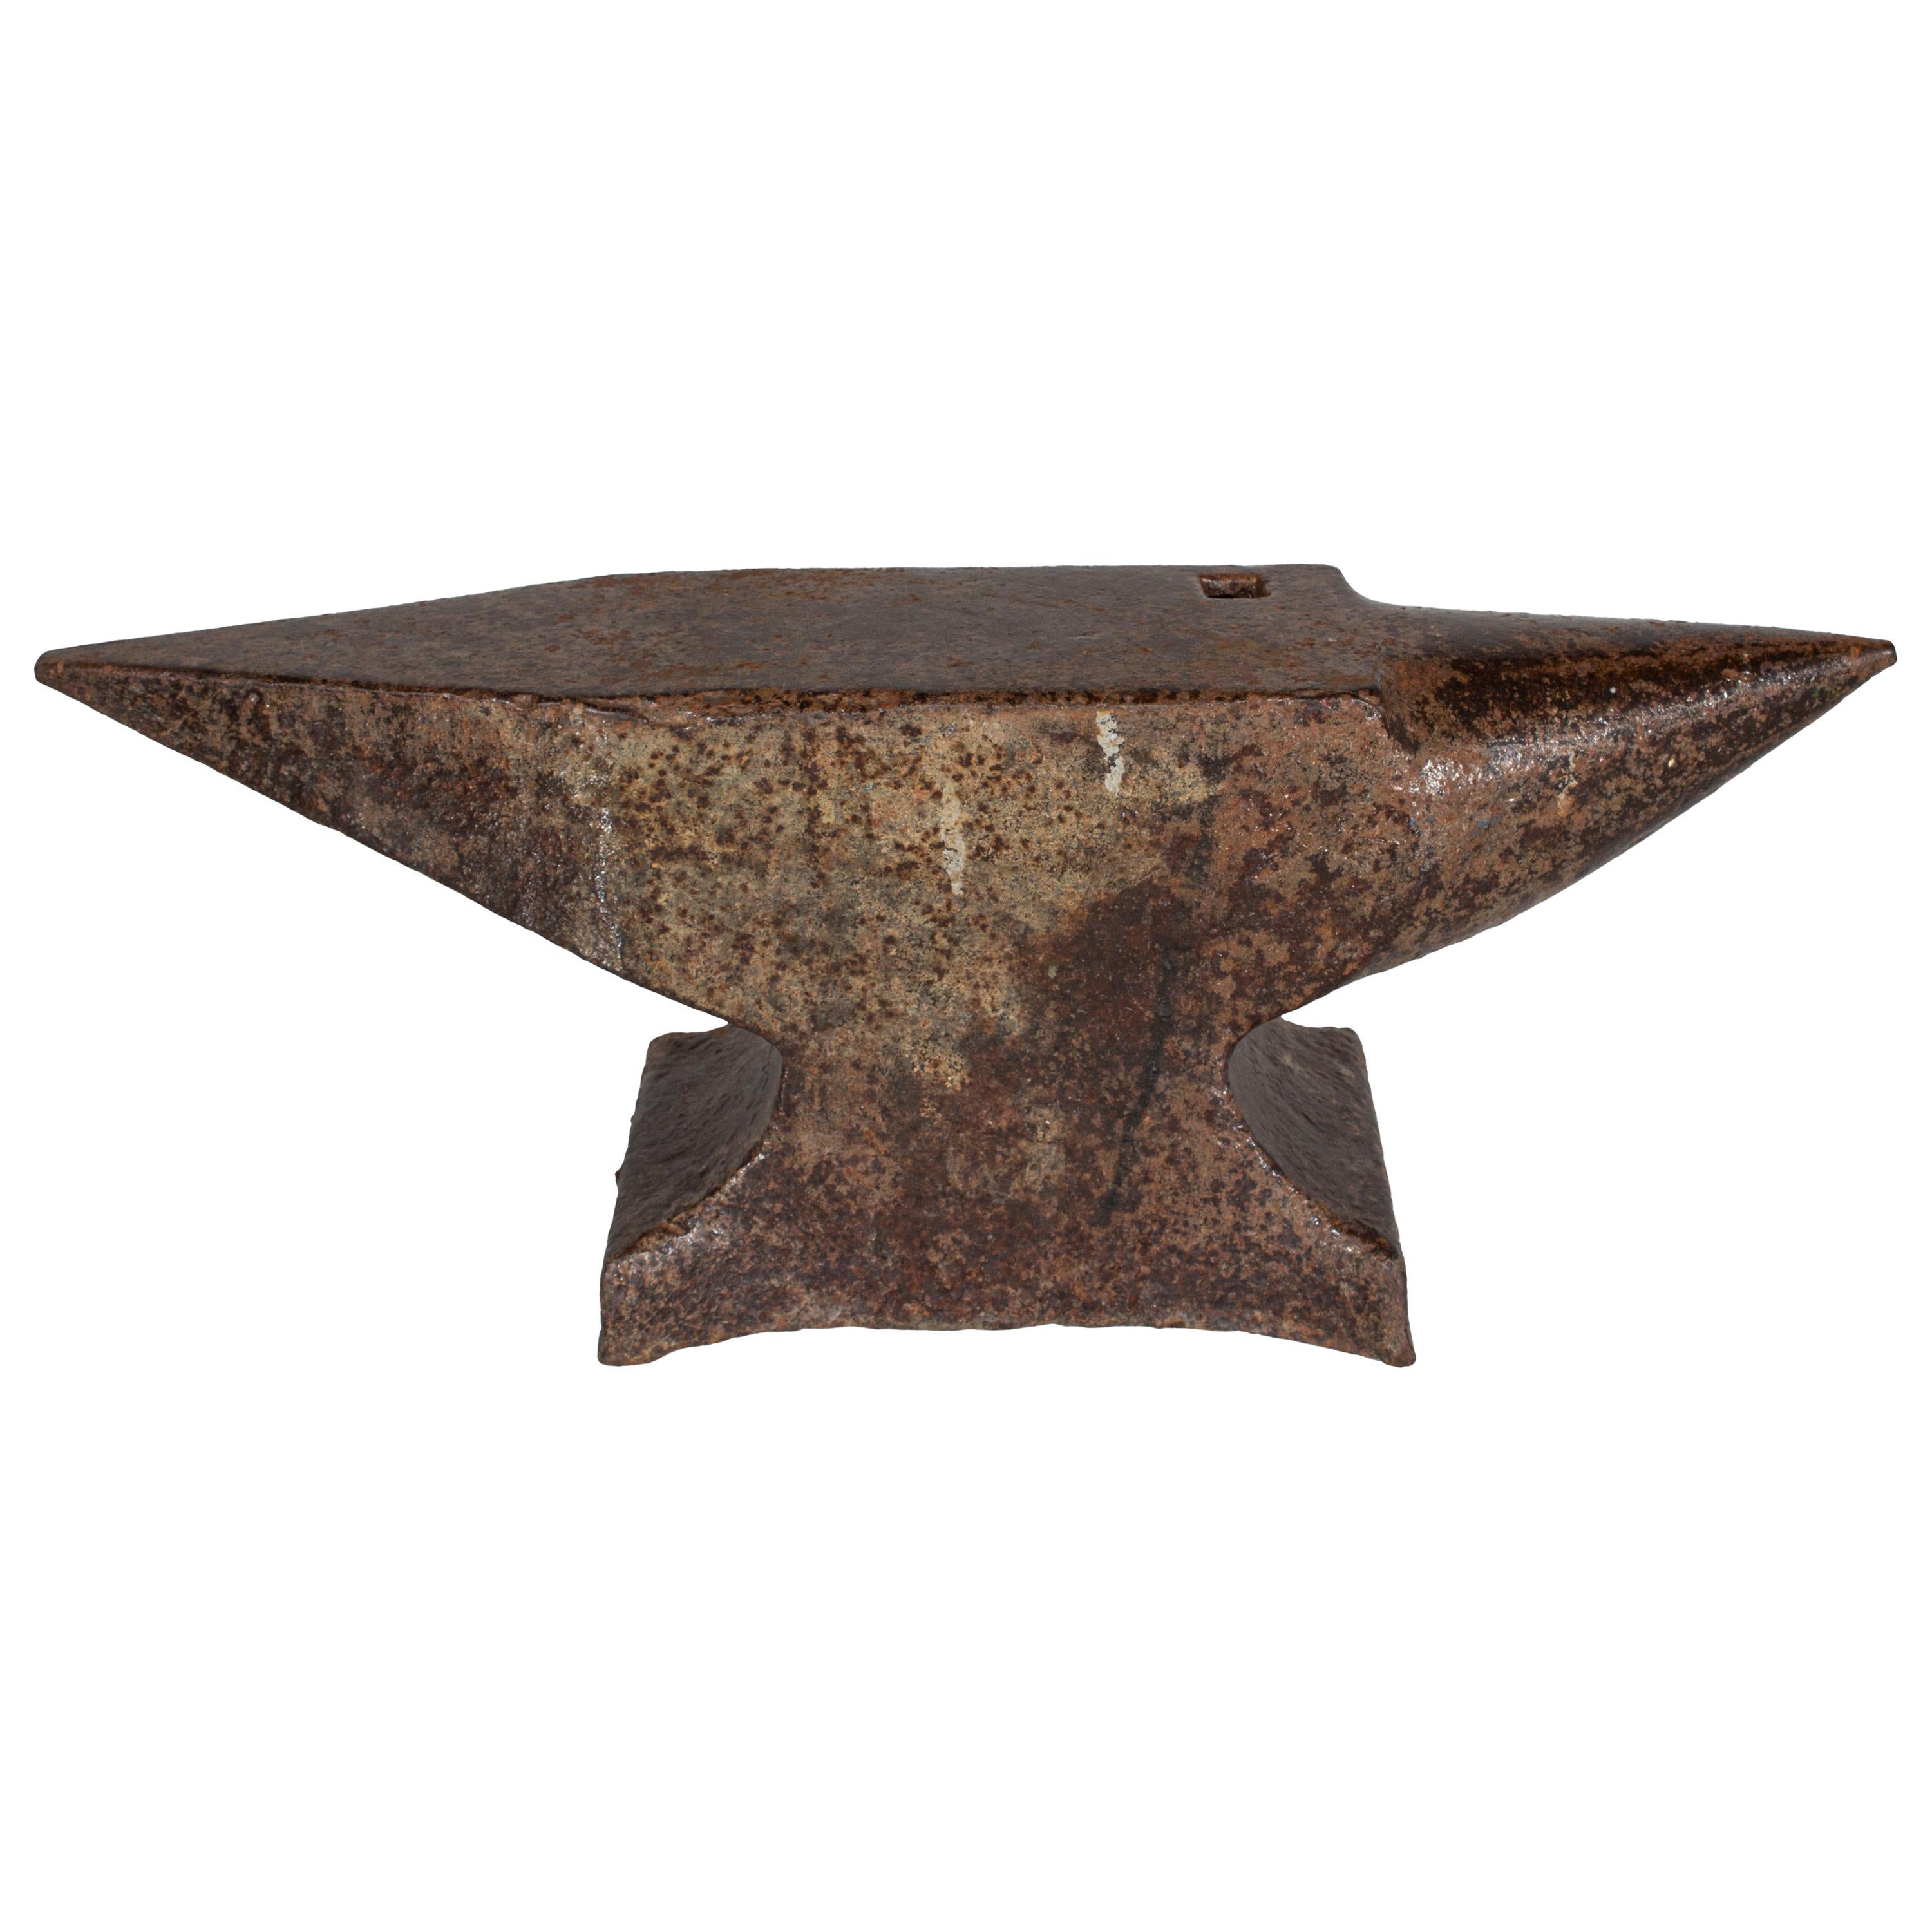 Antique Decorative Iron Anvil